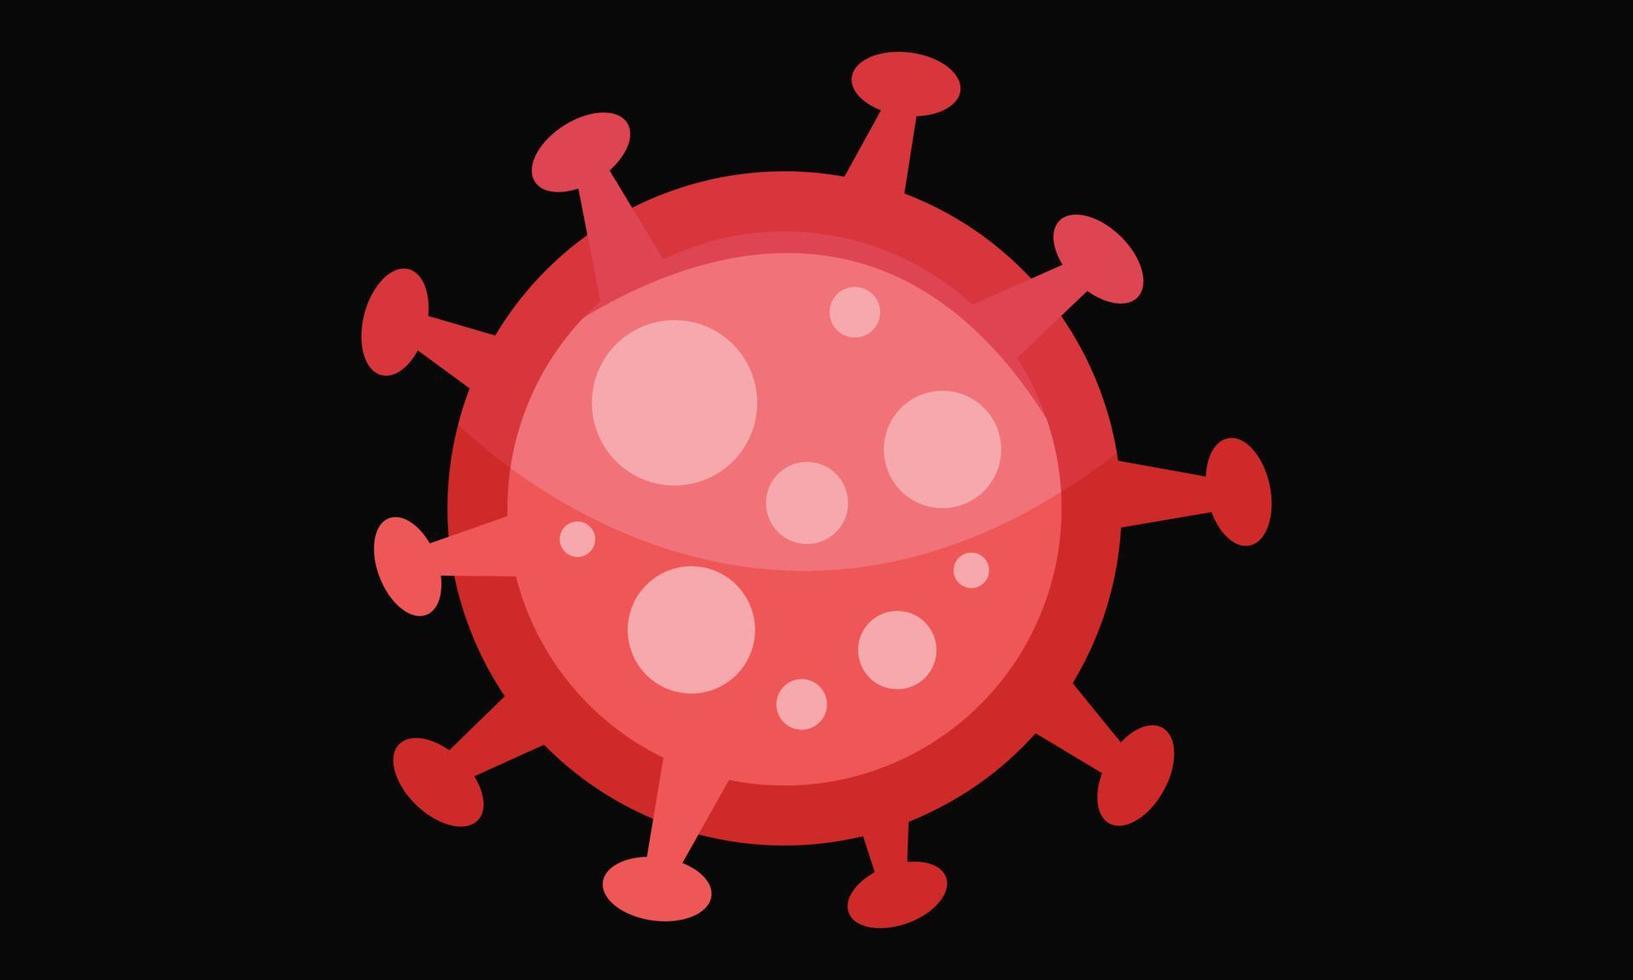 virus corona vettoriale, icona covid-19, virus pandemico su sfondo nero vettore